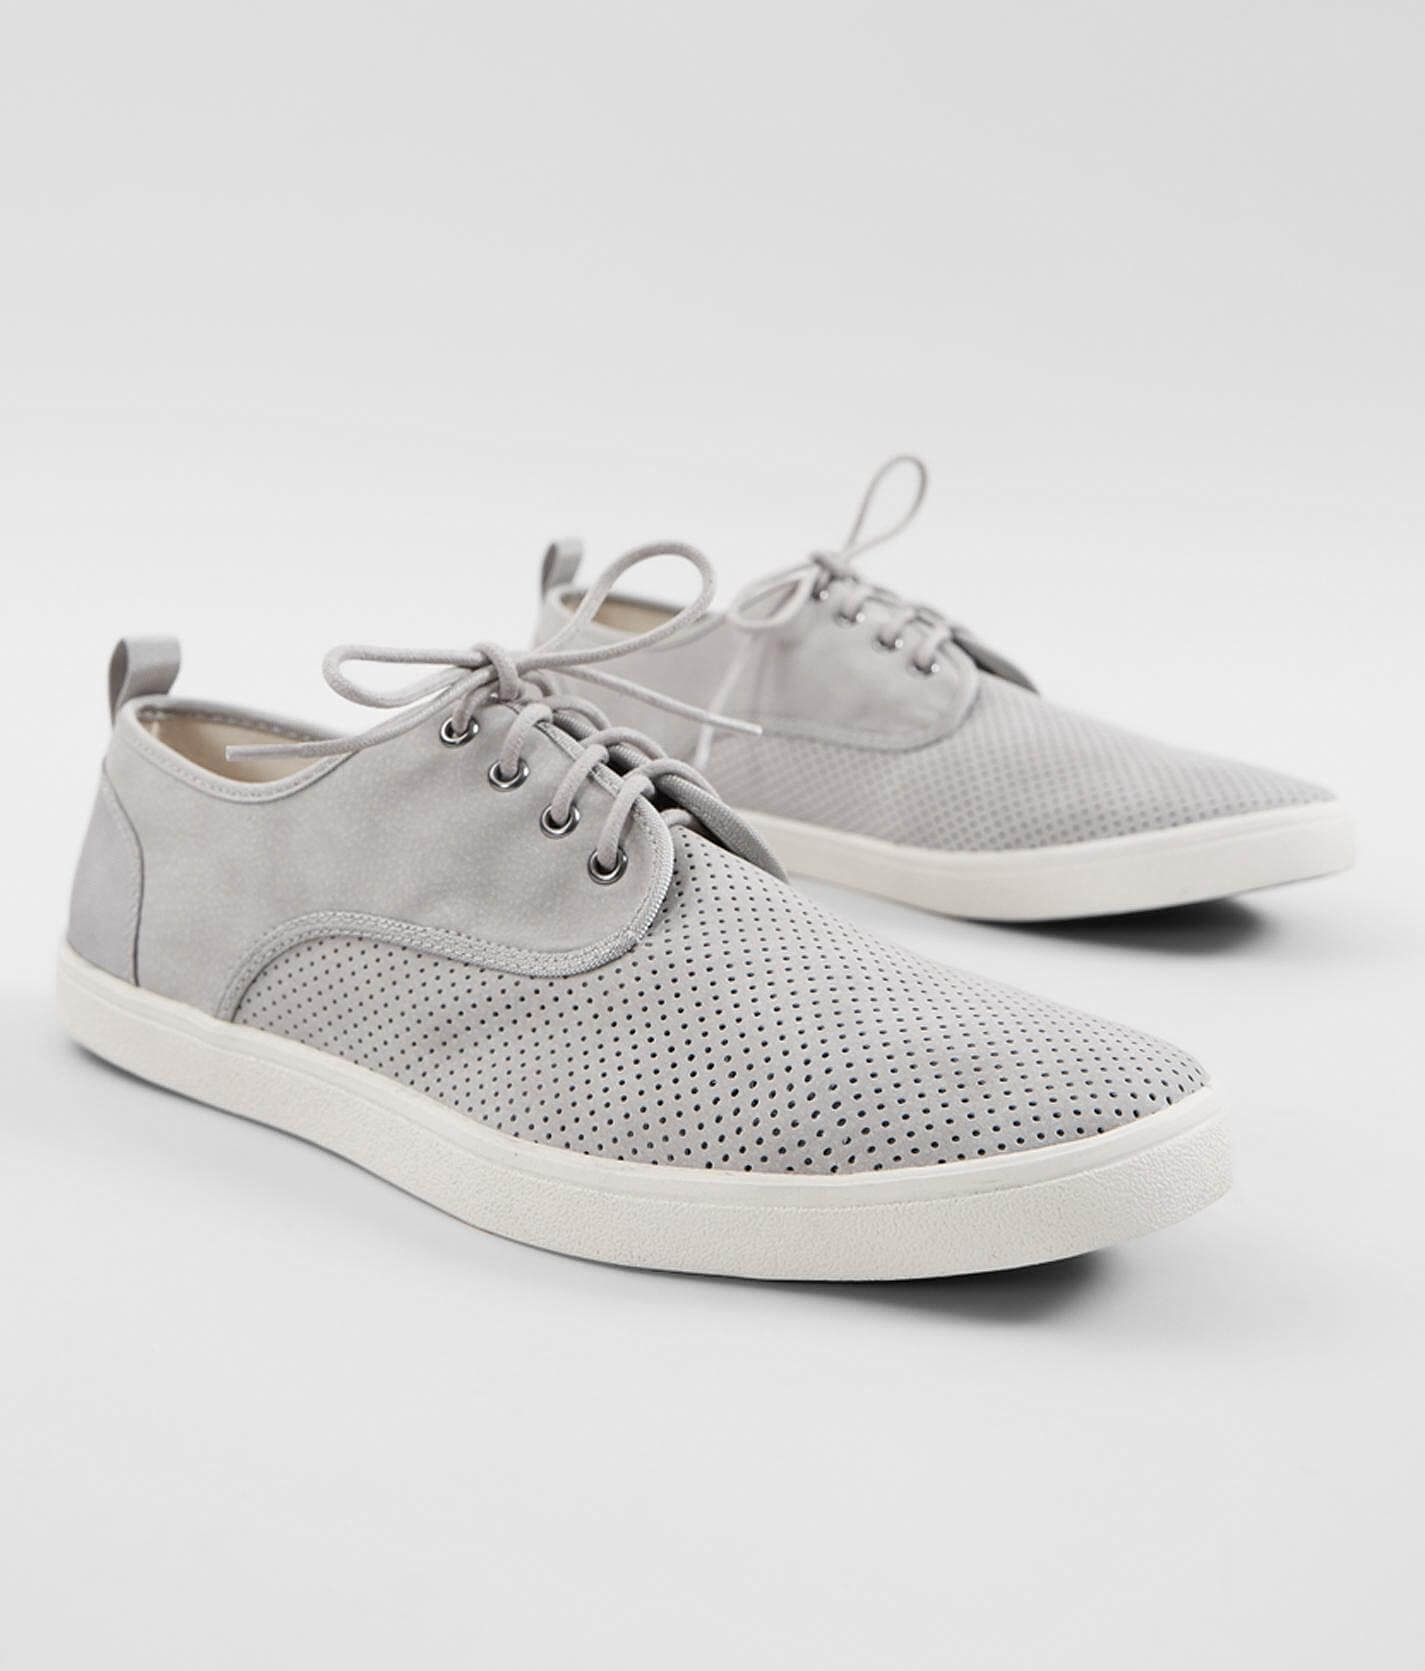 steve madden gray sneakers